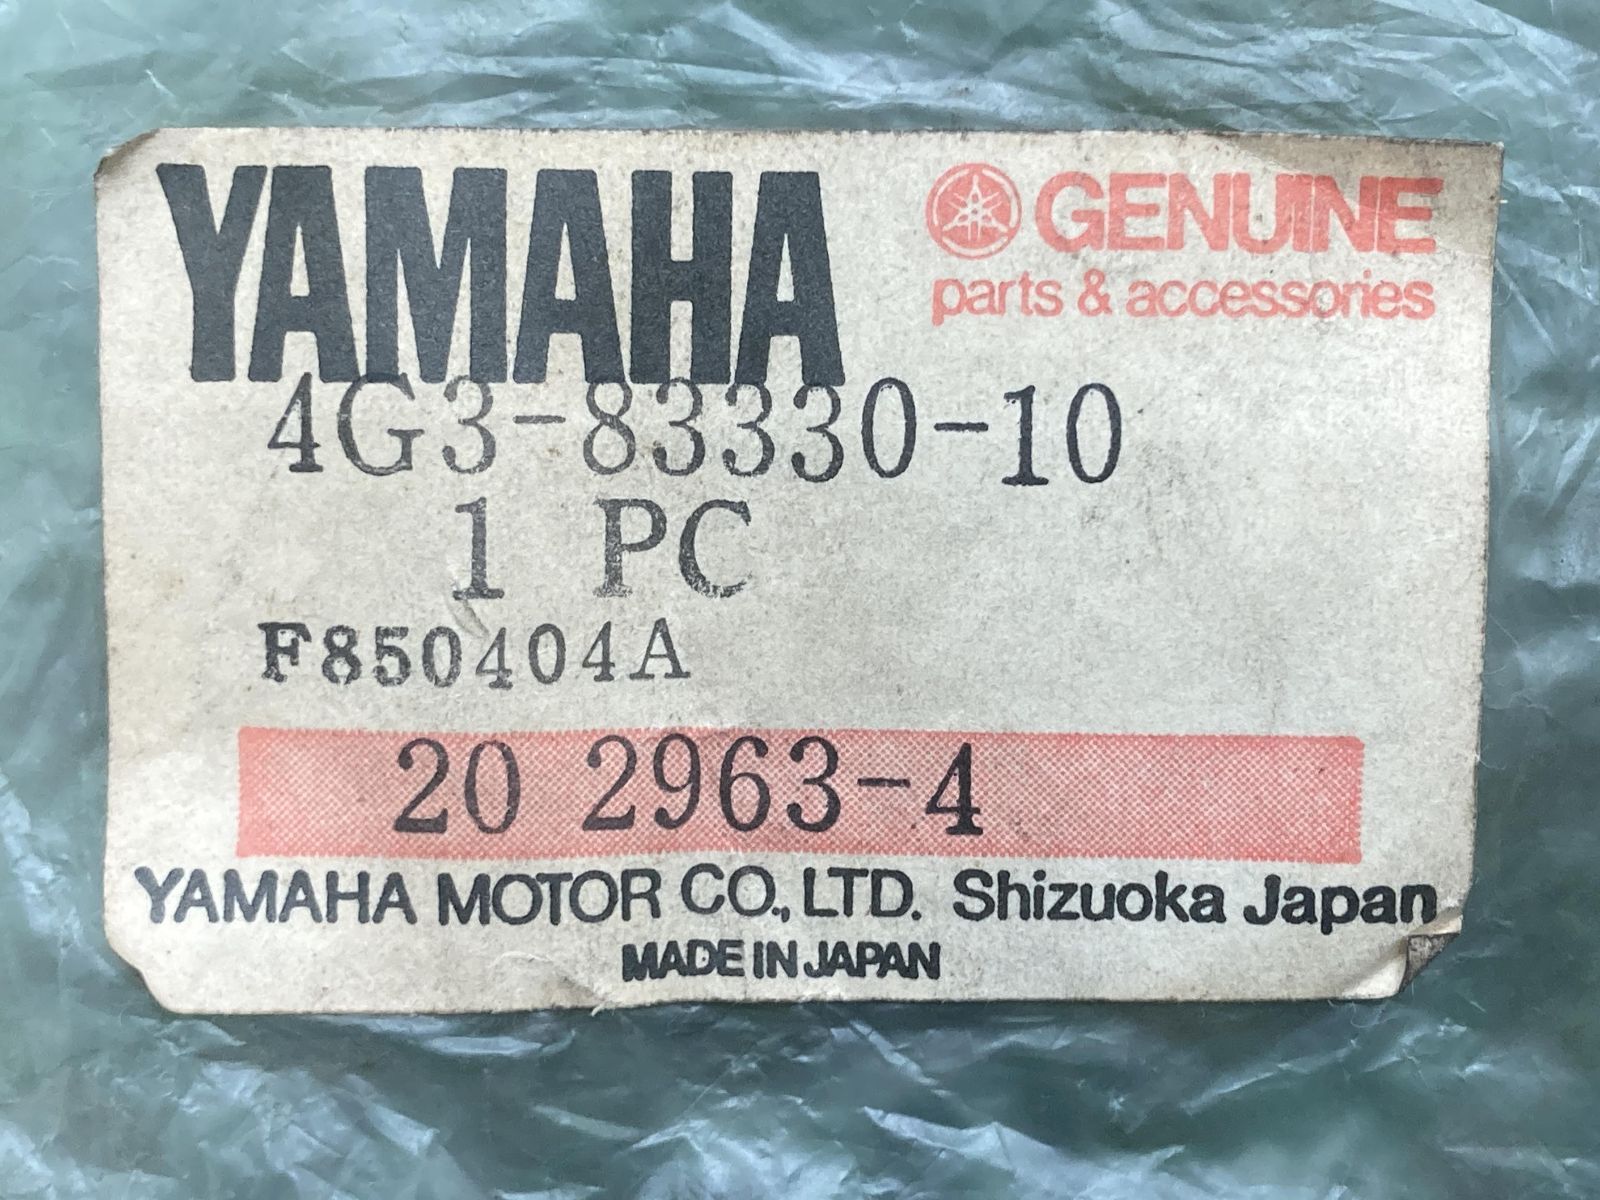 ヤマハ発動機 MR80 リアウインカー 左 4G3-83330-10 在庫有 即納 ヤマハ 純正 新品 バイク 部品 YAMAHA DT50 車検 Genuine GT50 GT80 ミニトレ